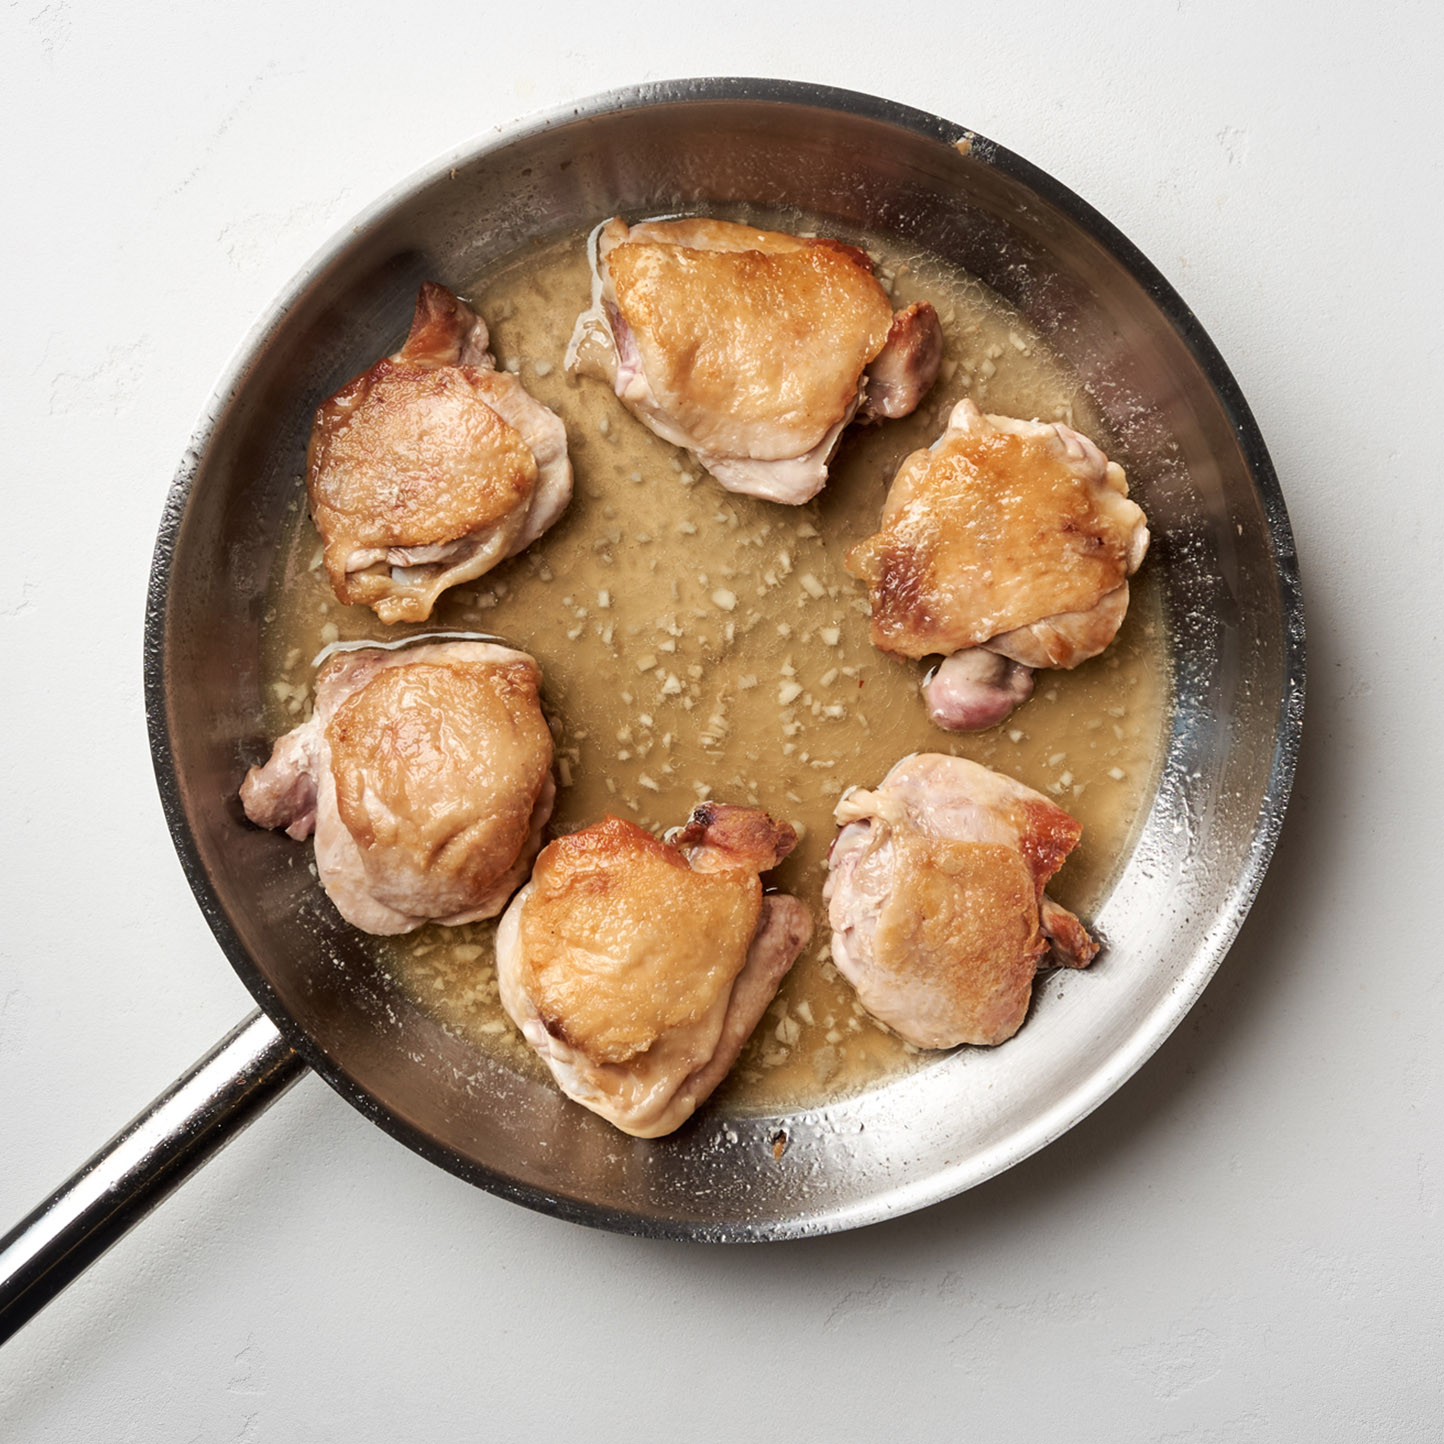 Карамельная курица по-вьетнамски. Шаг 4. Переверните куриные бедра, накройте крышкой и готовьте 15 минут, пока соус не приобретет красивый карамельный оттенок и не загустеет.